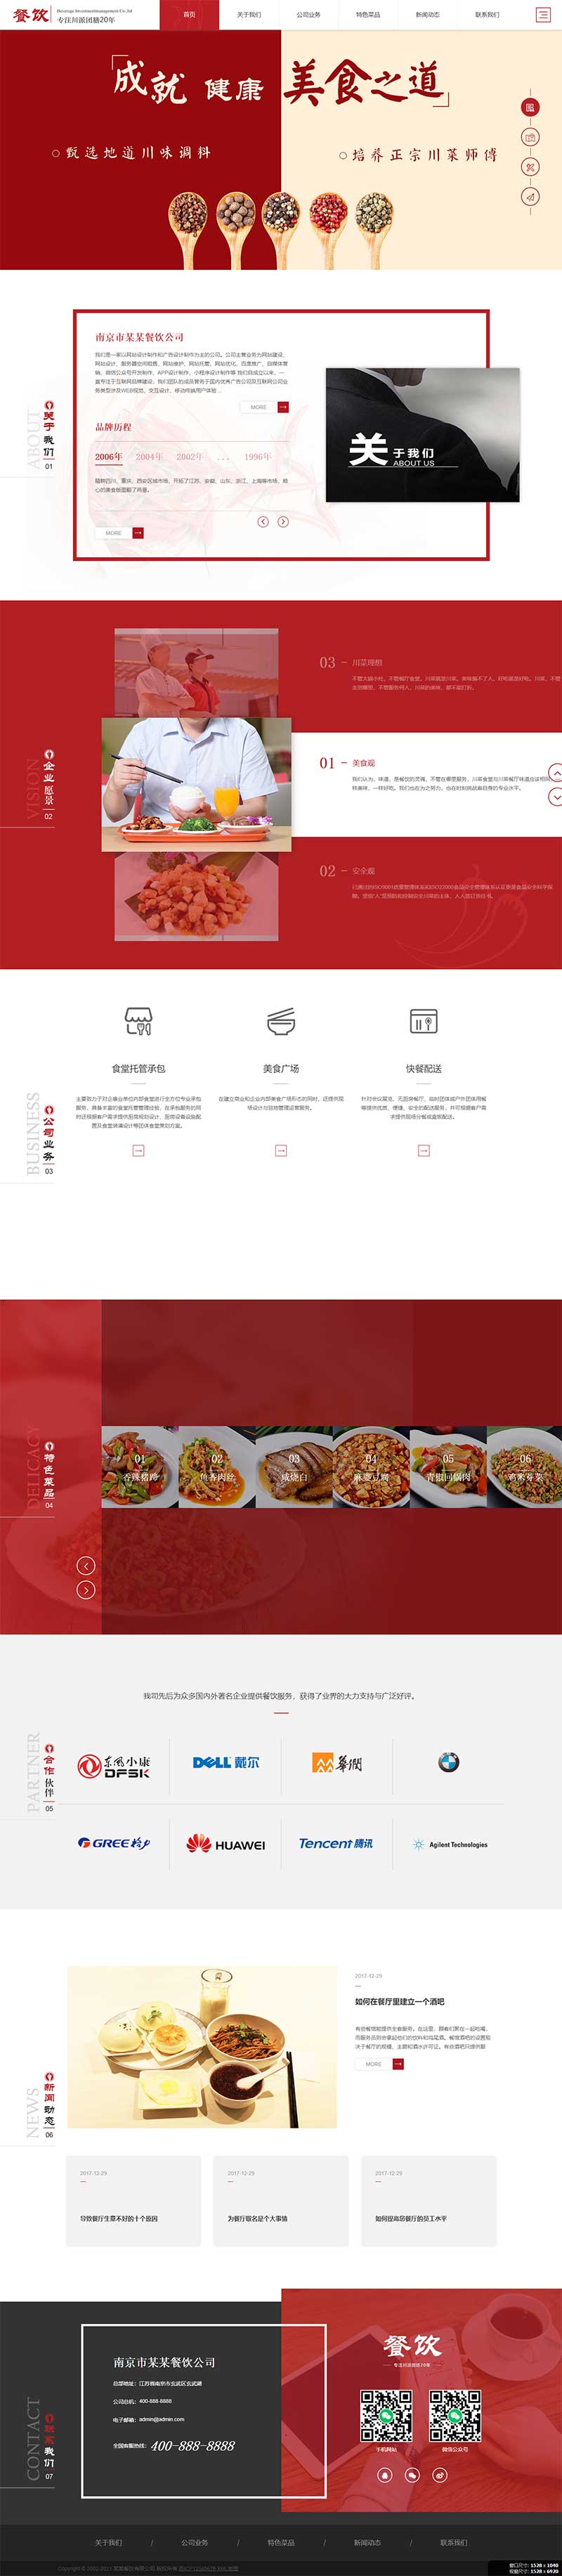 图片[2]-(自顺应手机版)相应式餐饮投资治理企业织梦模板-零度空间